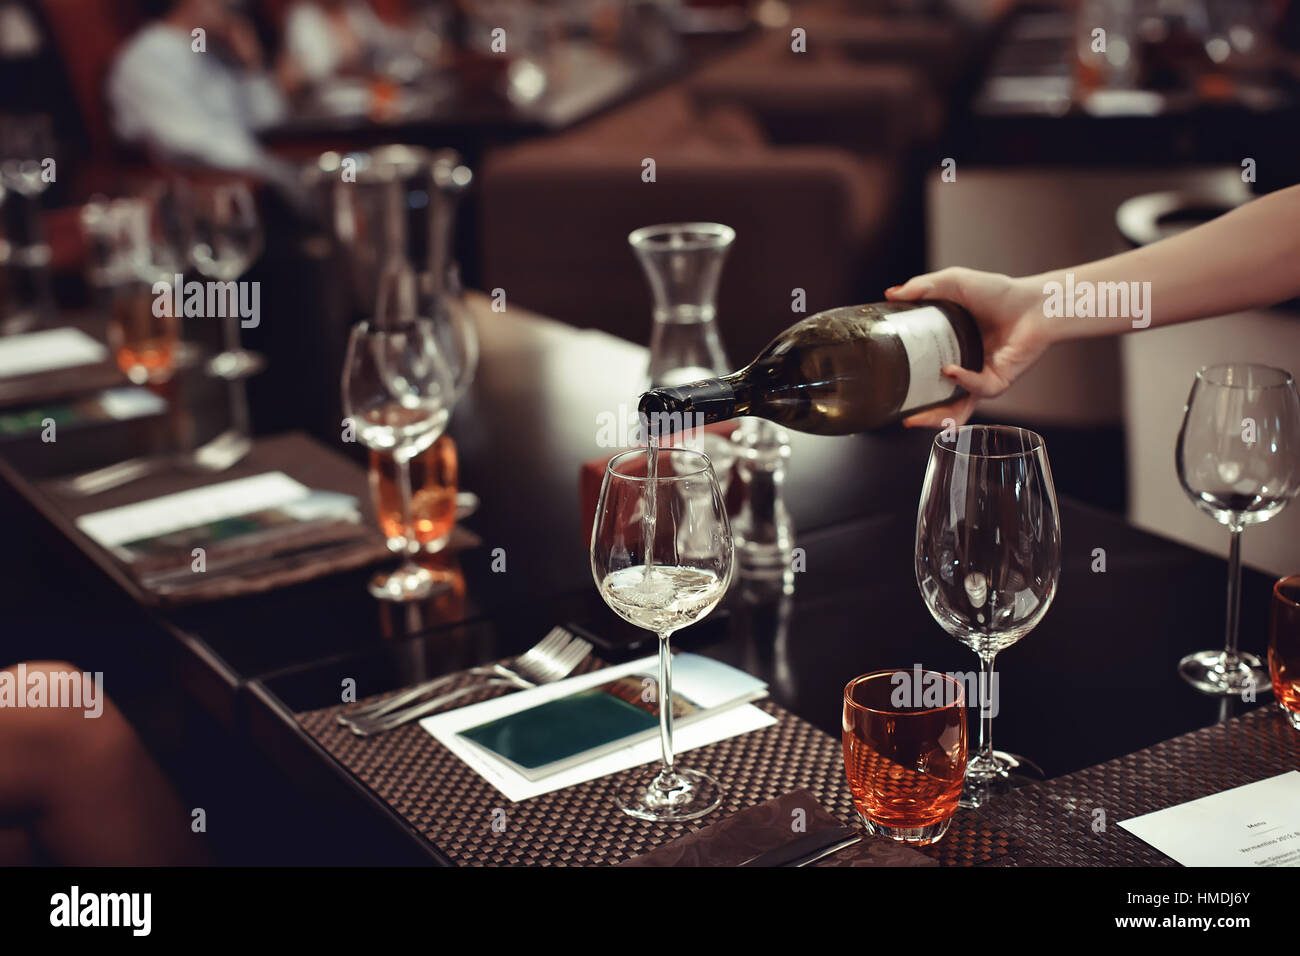 Cameriere versando il vino al bicchiere sullato tabella Foto Stock